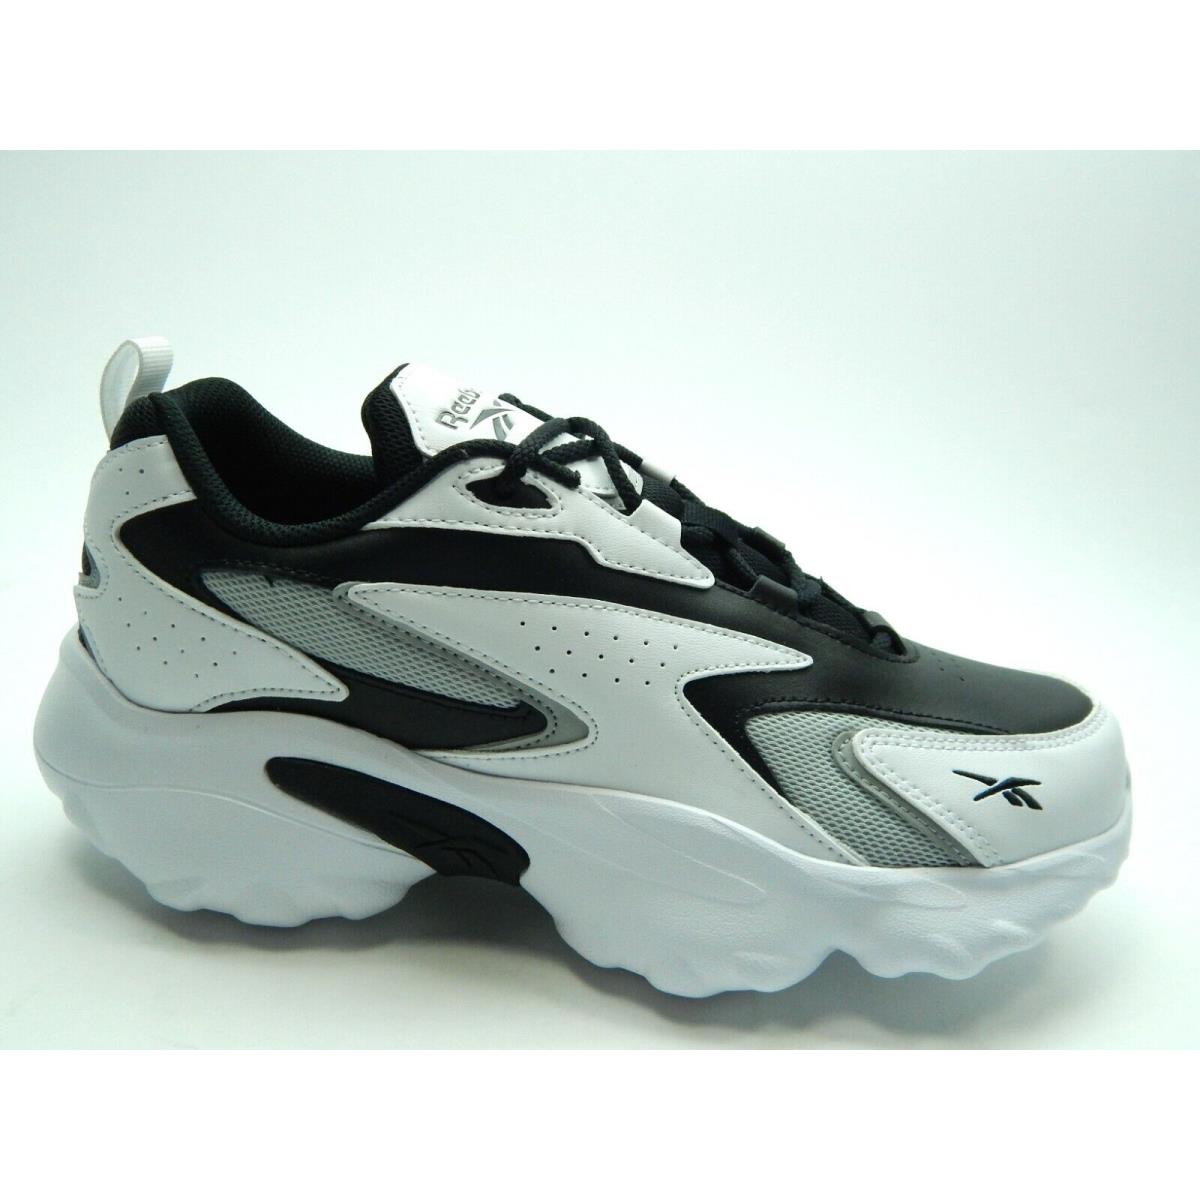 Reebok Dmx Series 01 White Black G57593 Men Shoes Size 10